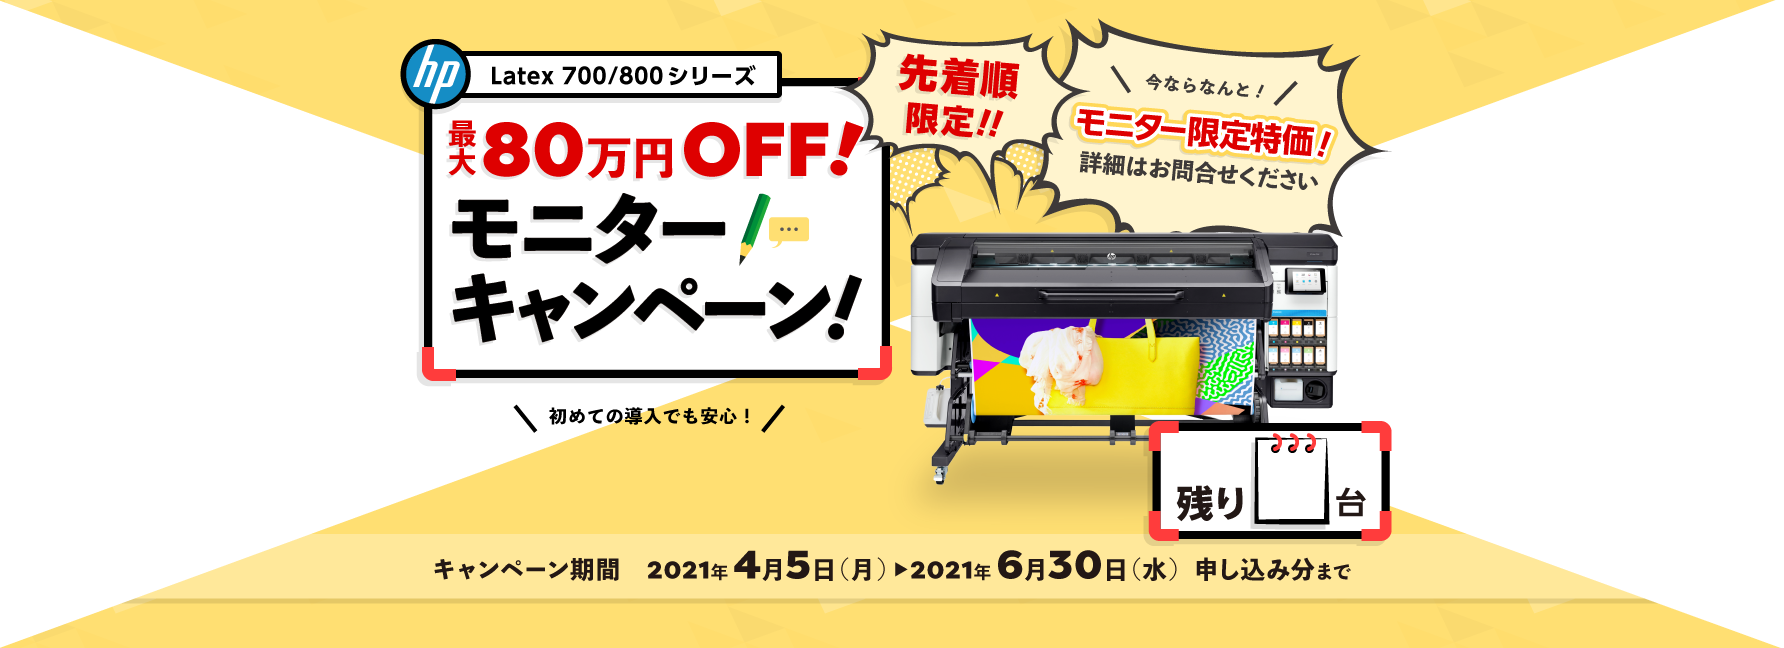 Latexプリンター700/800シリーズ  モニター キャンペーン！